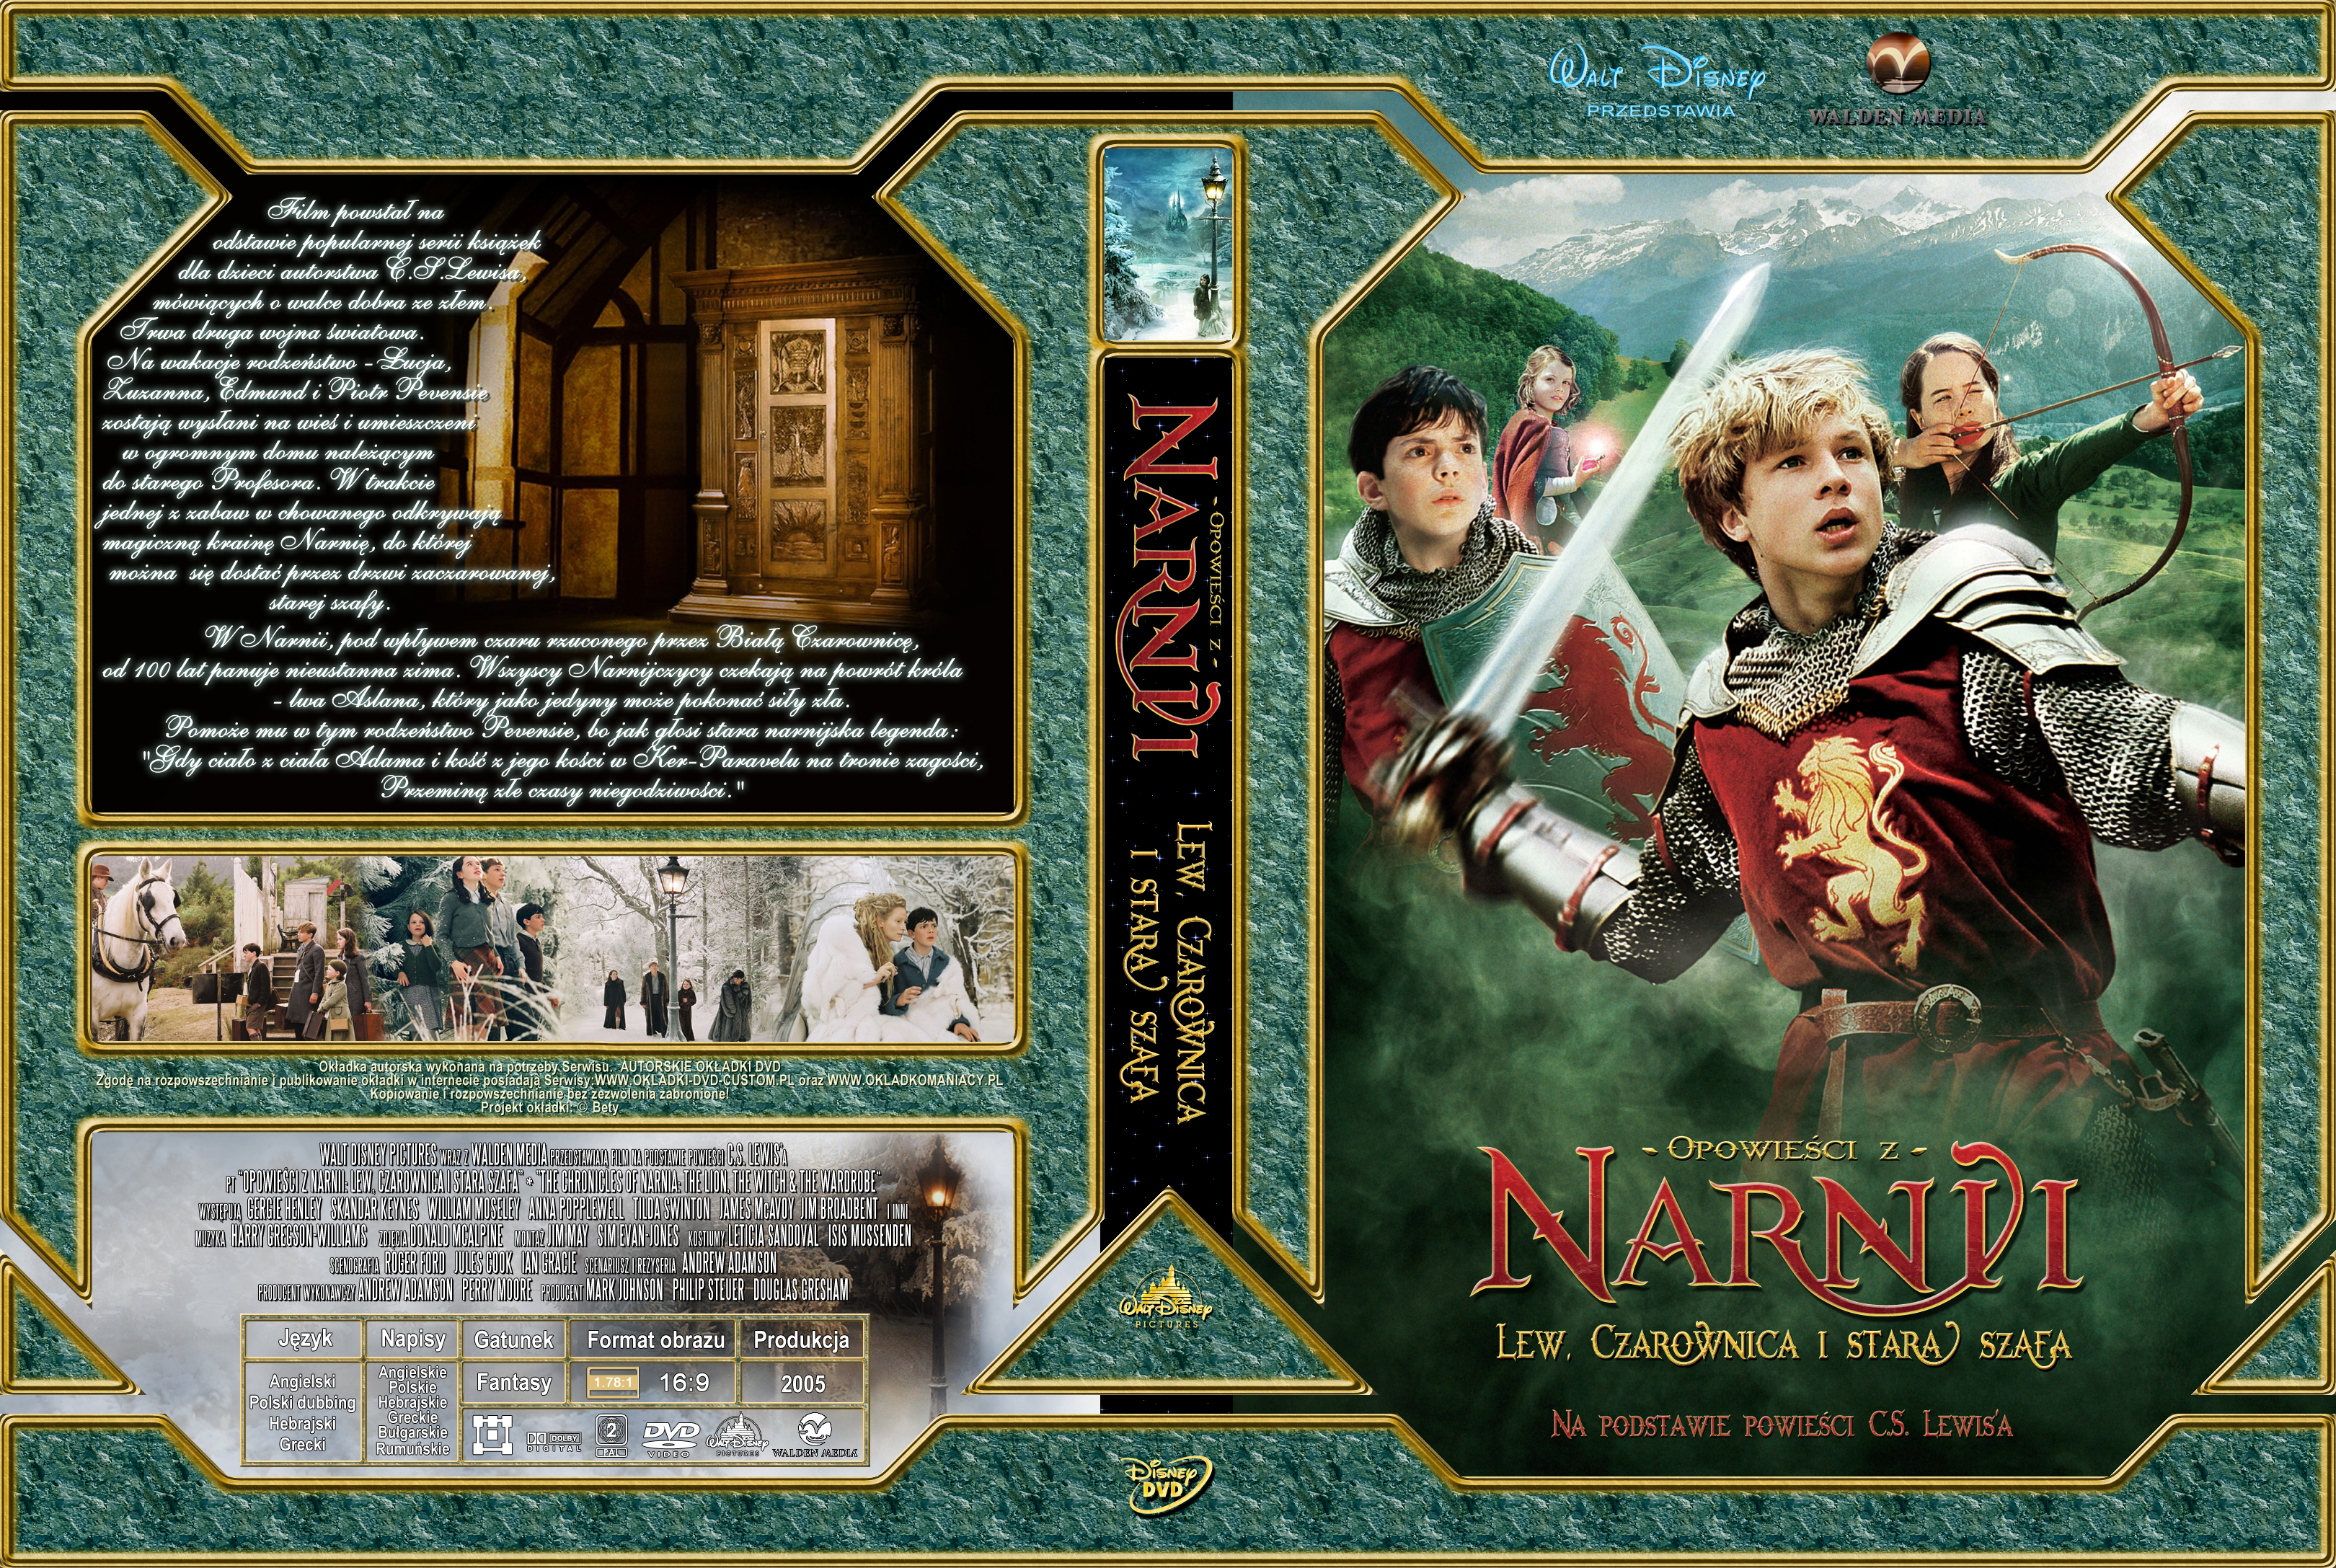 Okładki DVD - Opowiesci_z_Narni_cz1_v2b-Bety.jpg